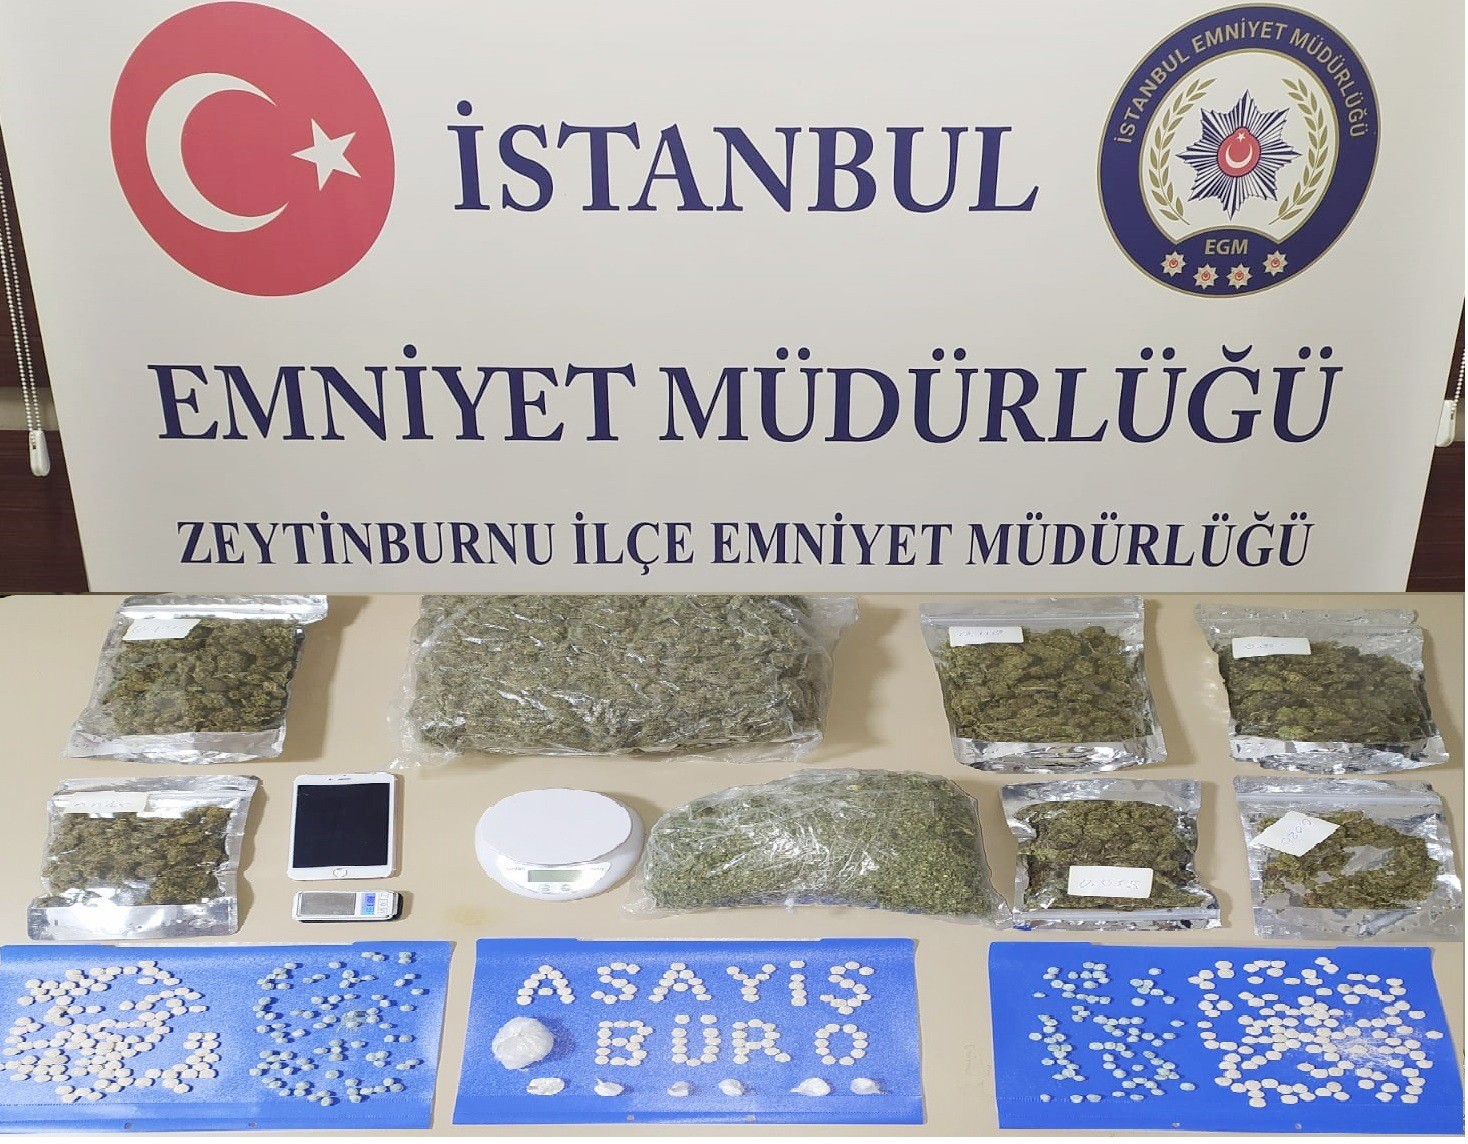 Zeytinburnu’nda yastığın içine uyuşturucu saklayan kişi tutuklandı